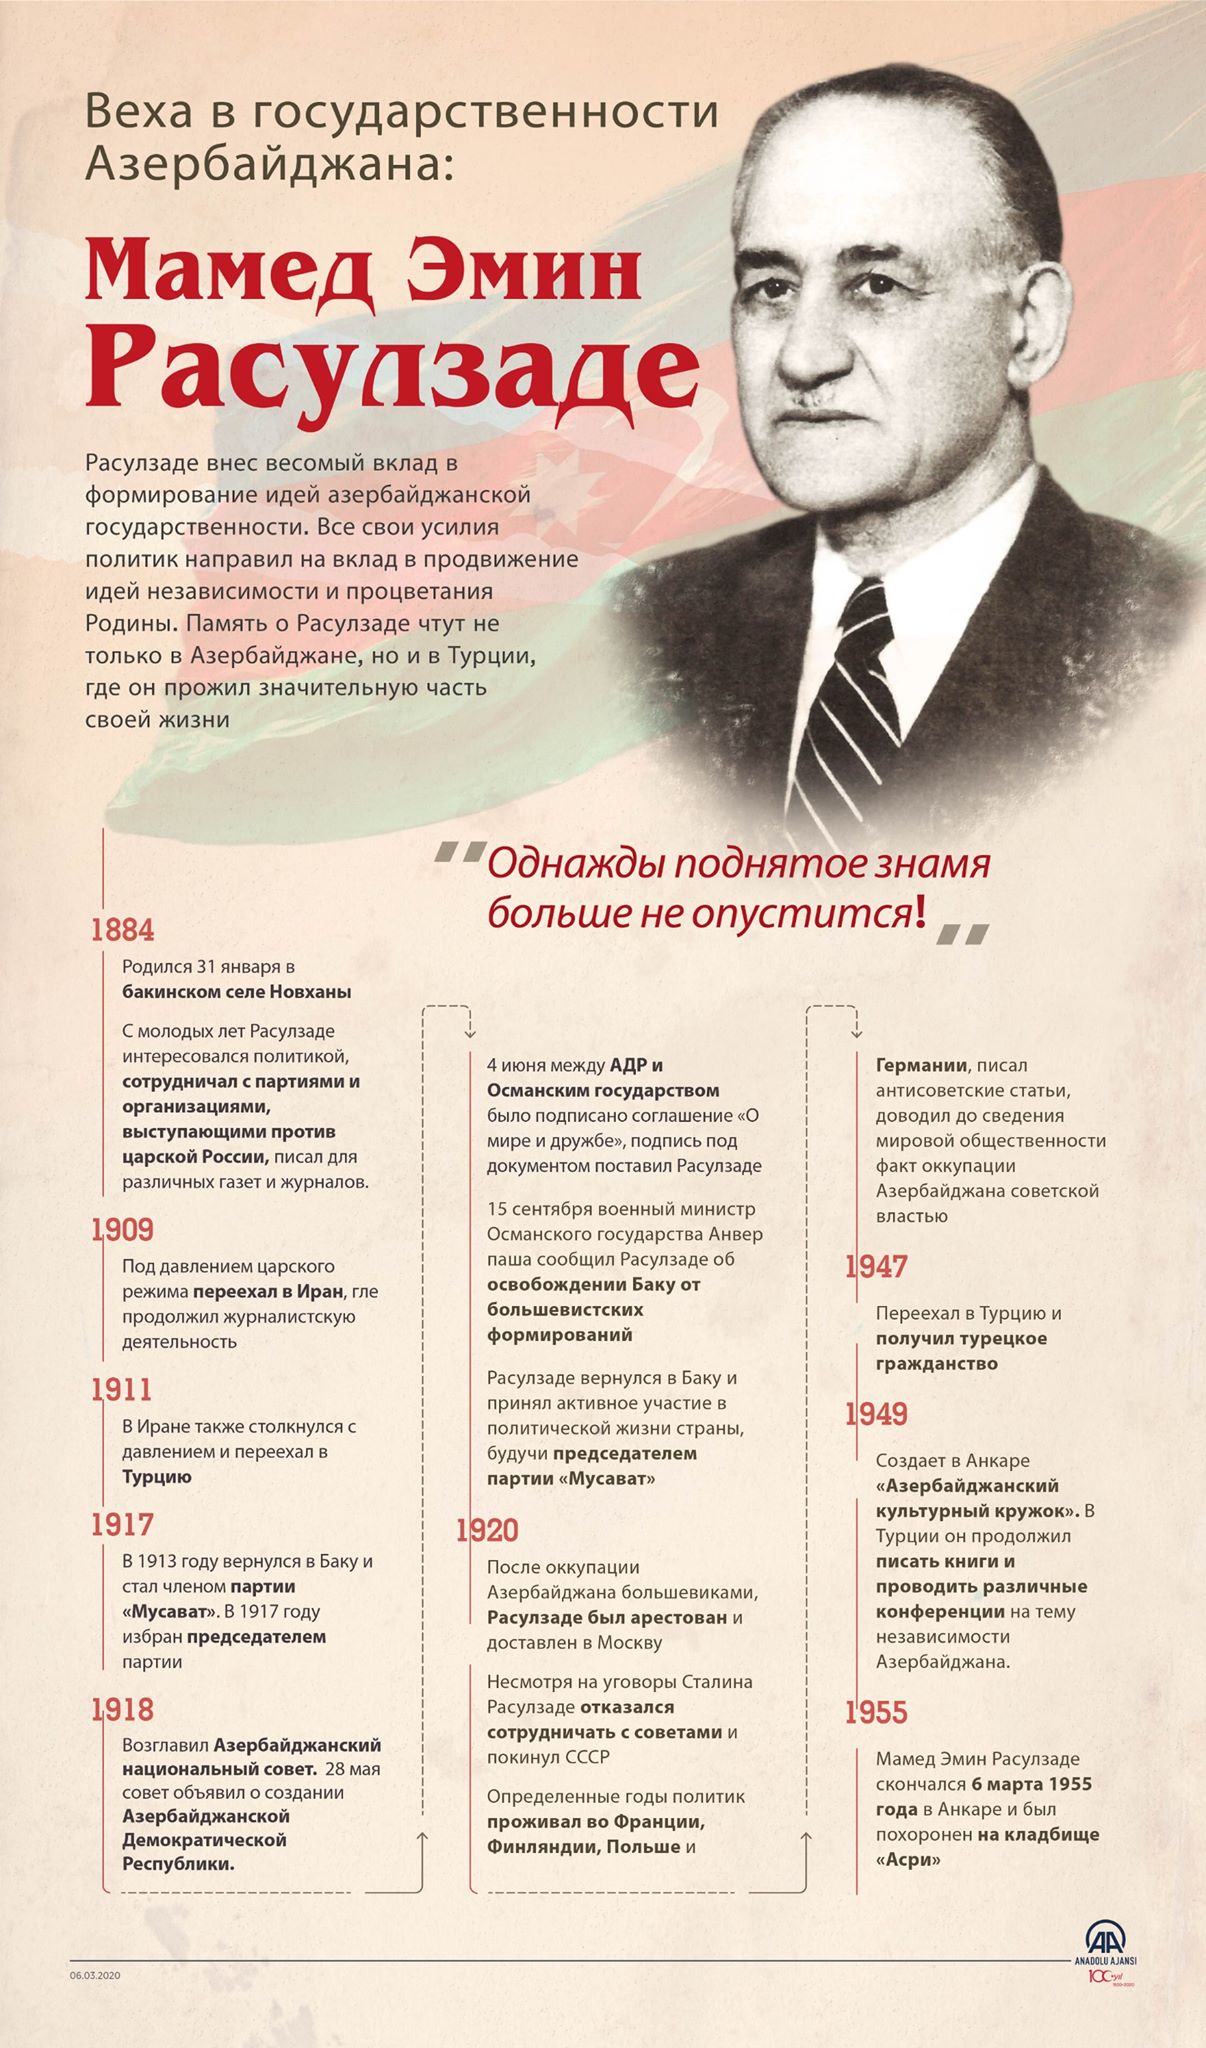 Веха в политике Азербайджана: Мамед Эмин Расулзаде